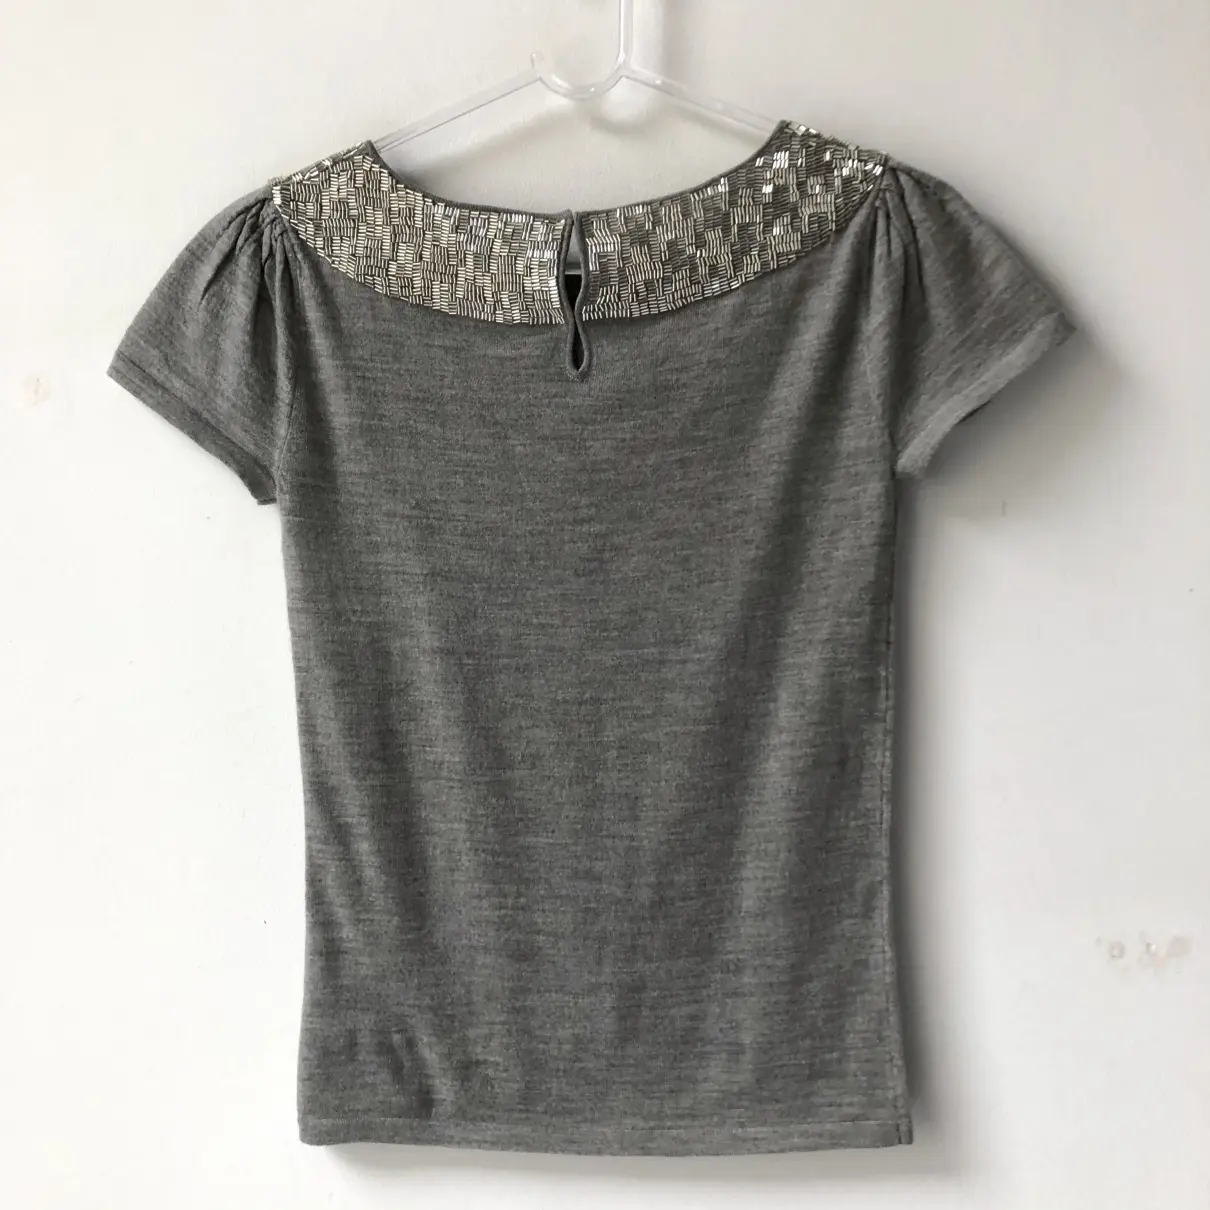 Wool t-shirt Givenchy